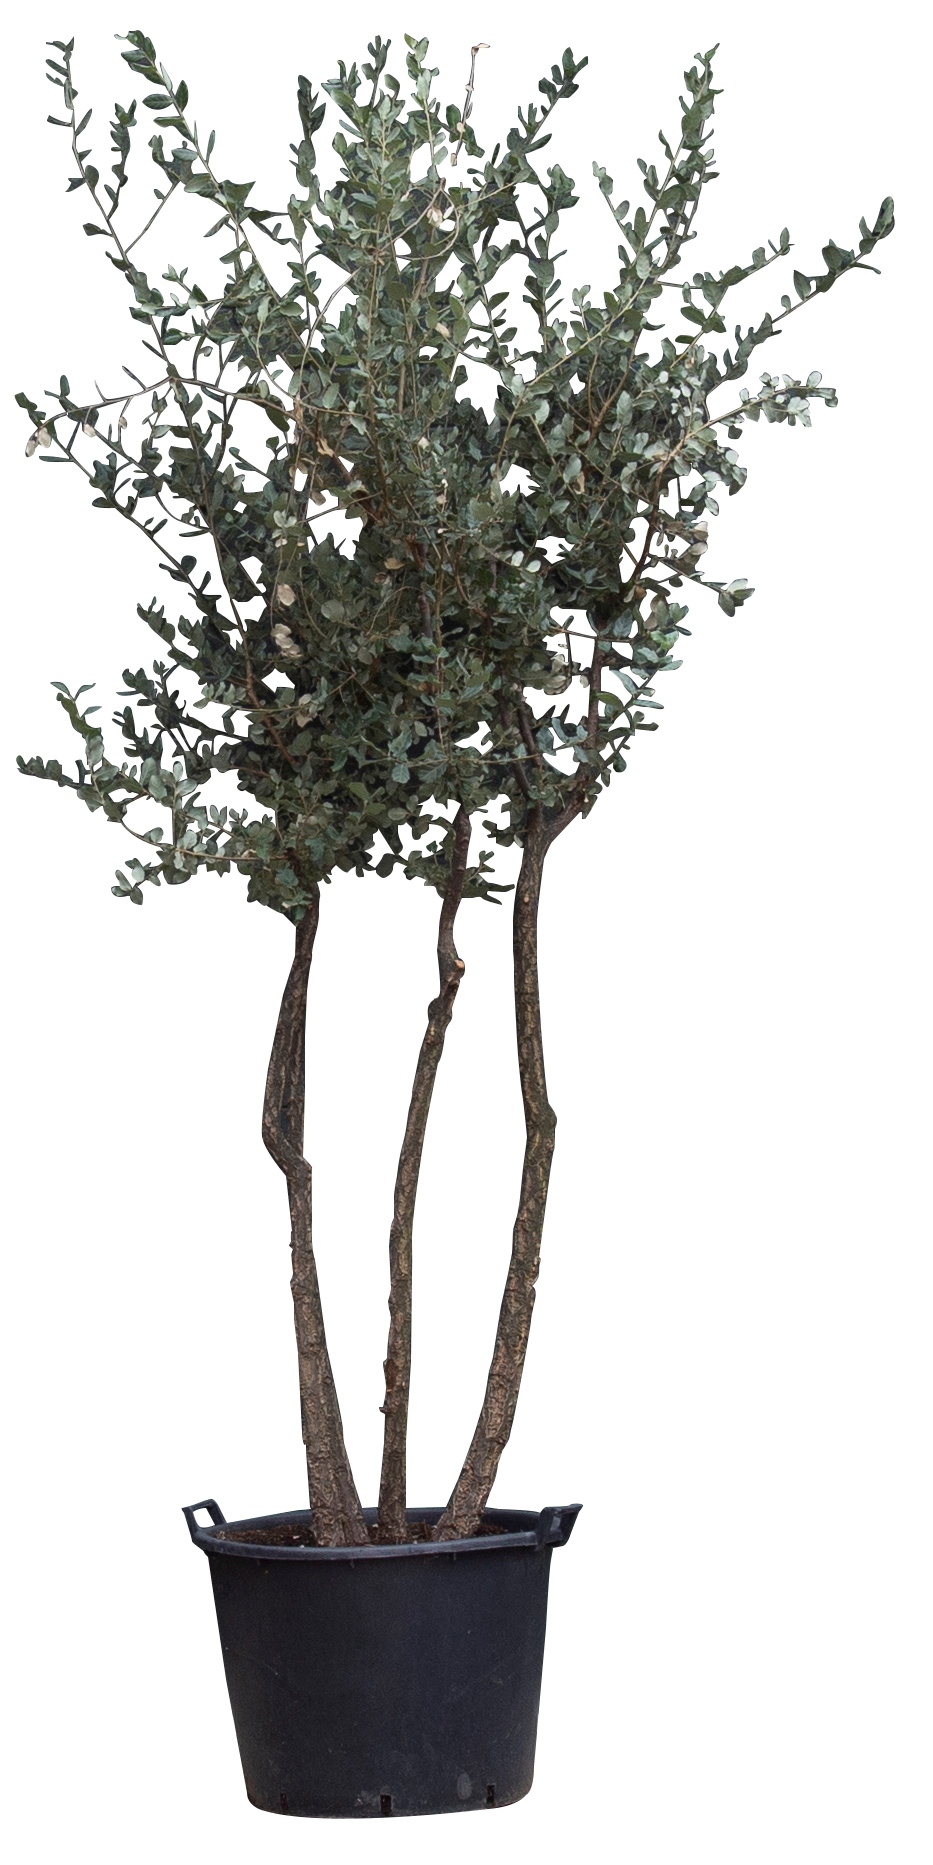 Kurkeik multistam ‘Quercus suber’  totaalhoogte 200-250 cm